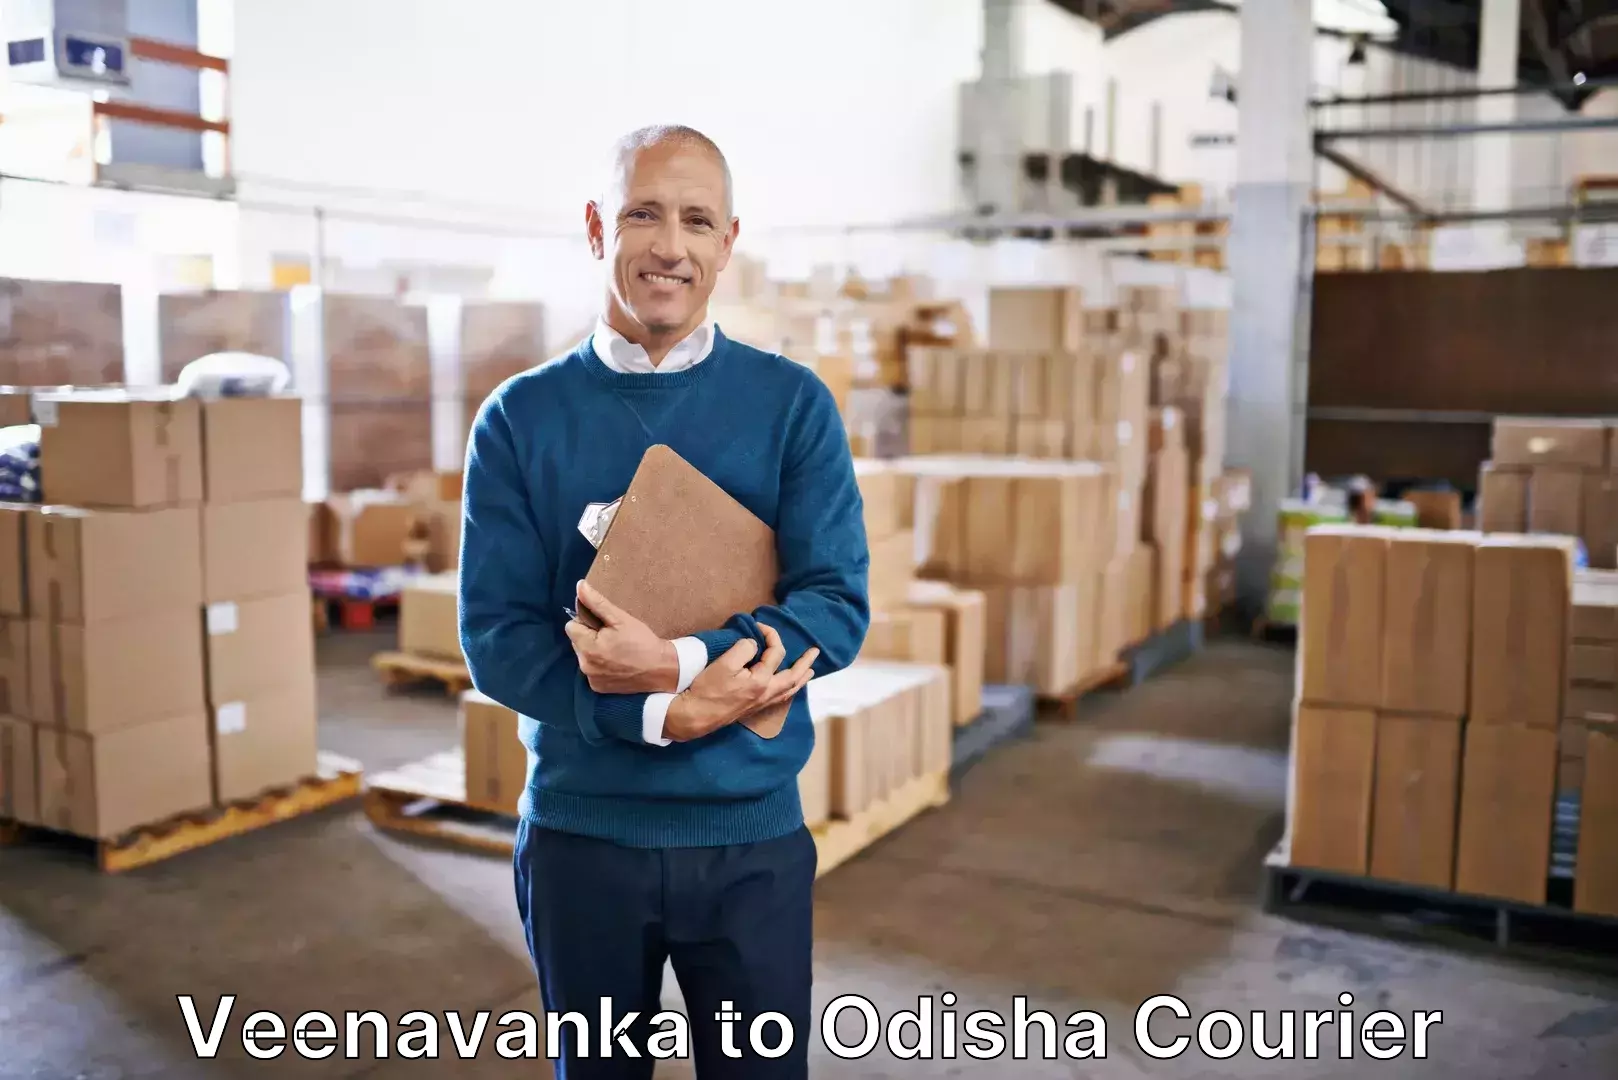 Luggage shipment processing Veenavanka to Odisha